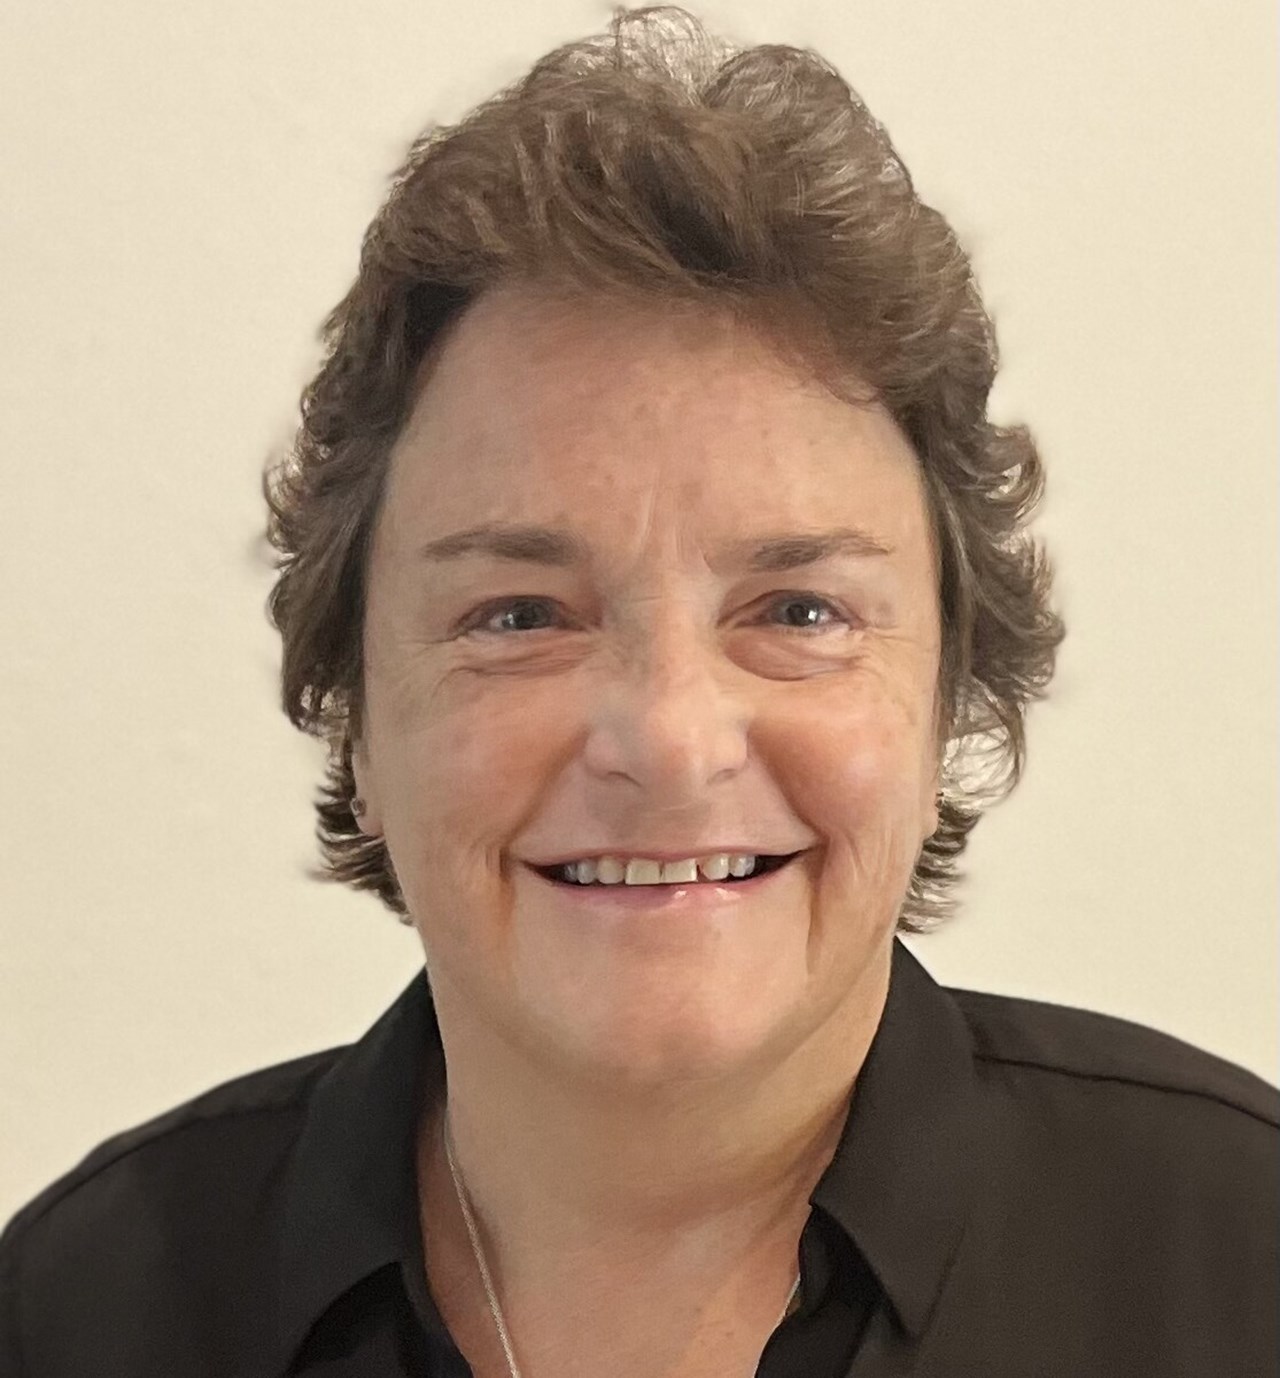 Sharon M. Kolb, hedersdoktor vid samhällsvetenskaplig fakultet